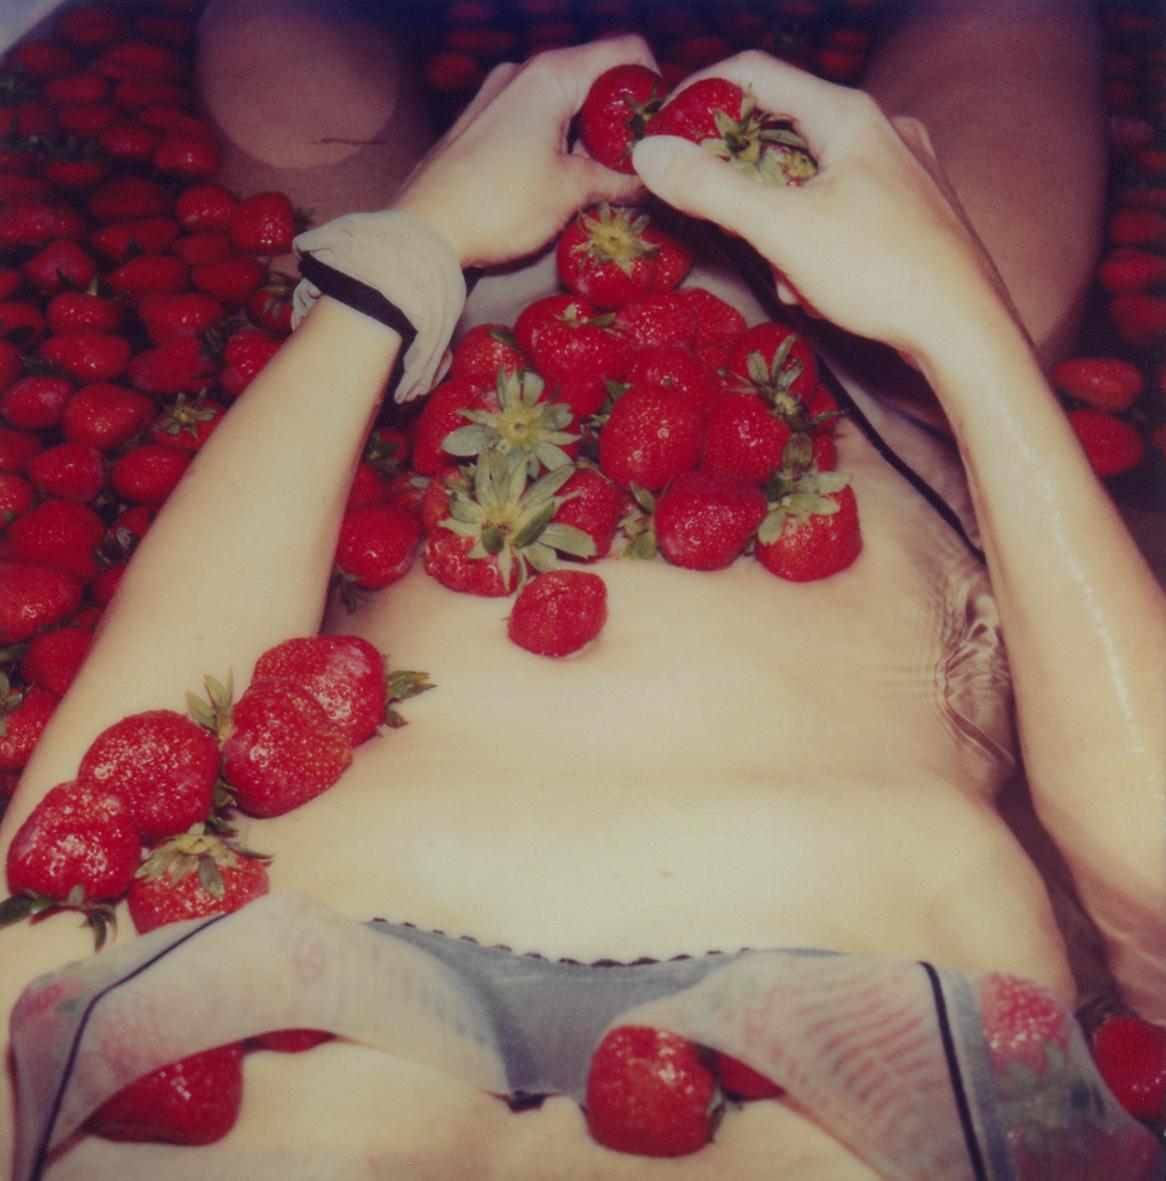 Carmen de Vos Figurative Photograph – Mädchen wie Erdbeer, aus keinem Grund und aus keinem Grund #14 – 21. Jahrhundert, Polaroid